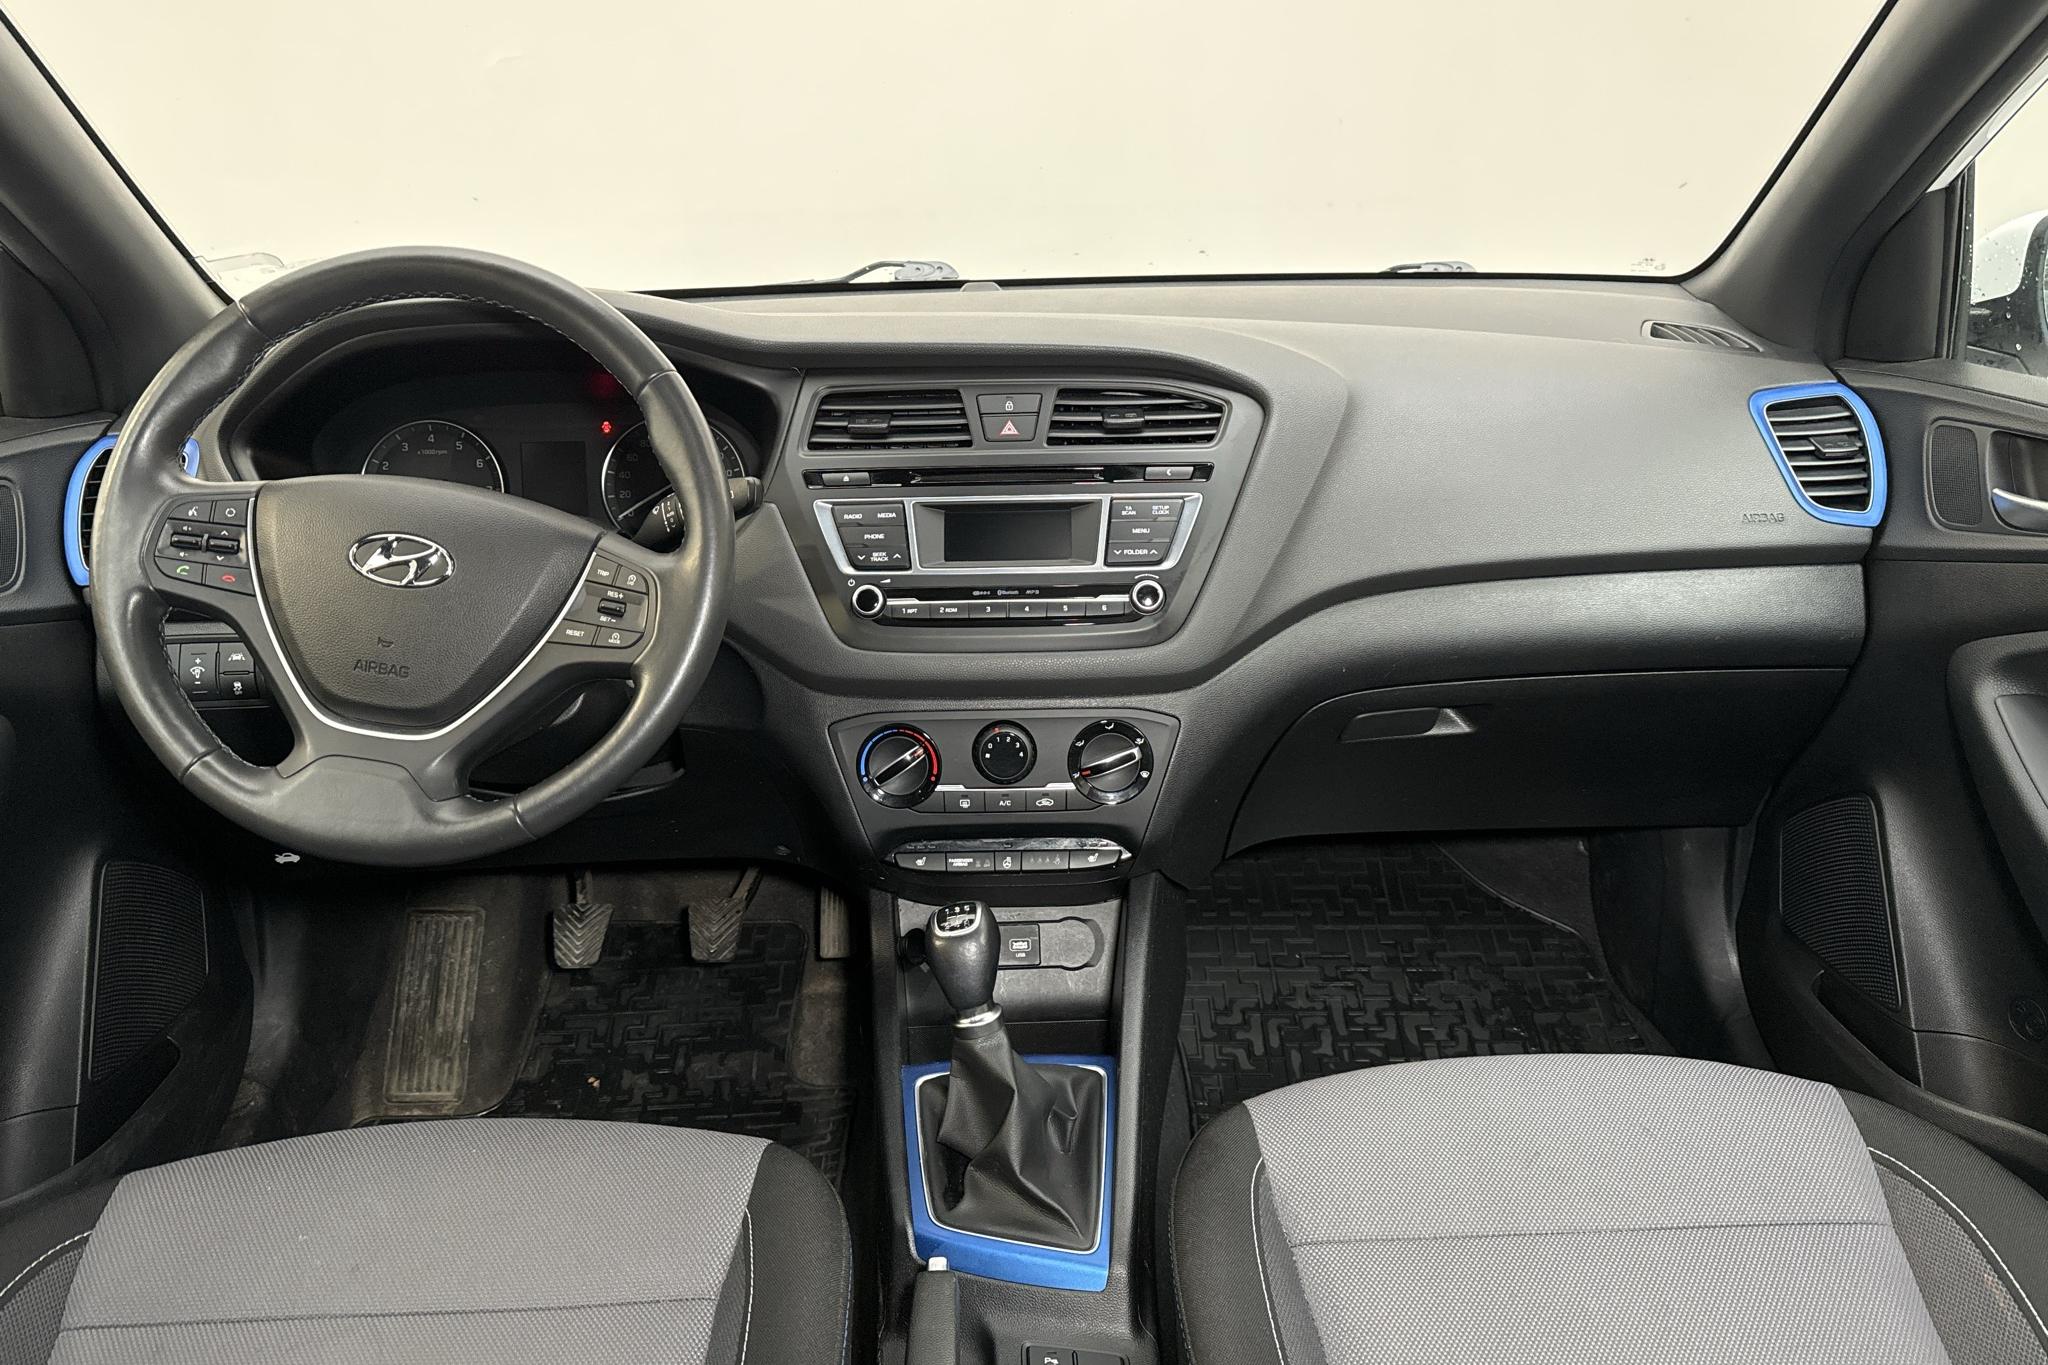 Hyundai i20 1.2 (84hk) - 74 390 km - Käsitsi - valge - 2017